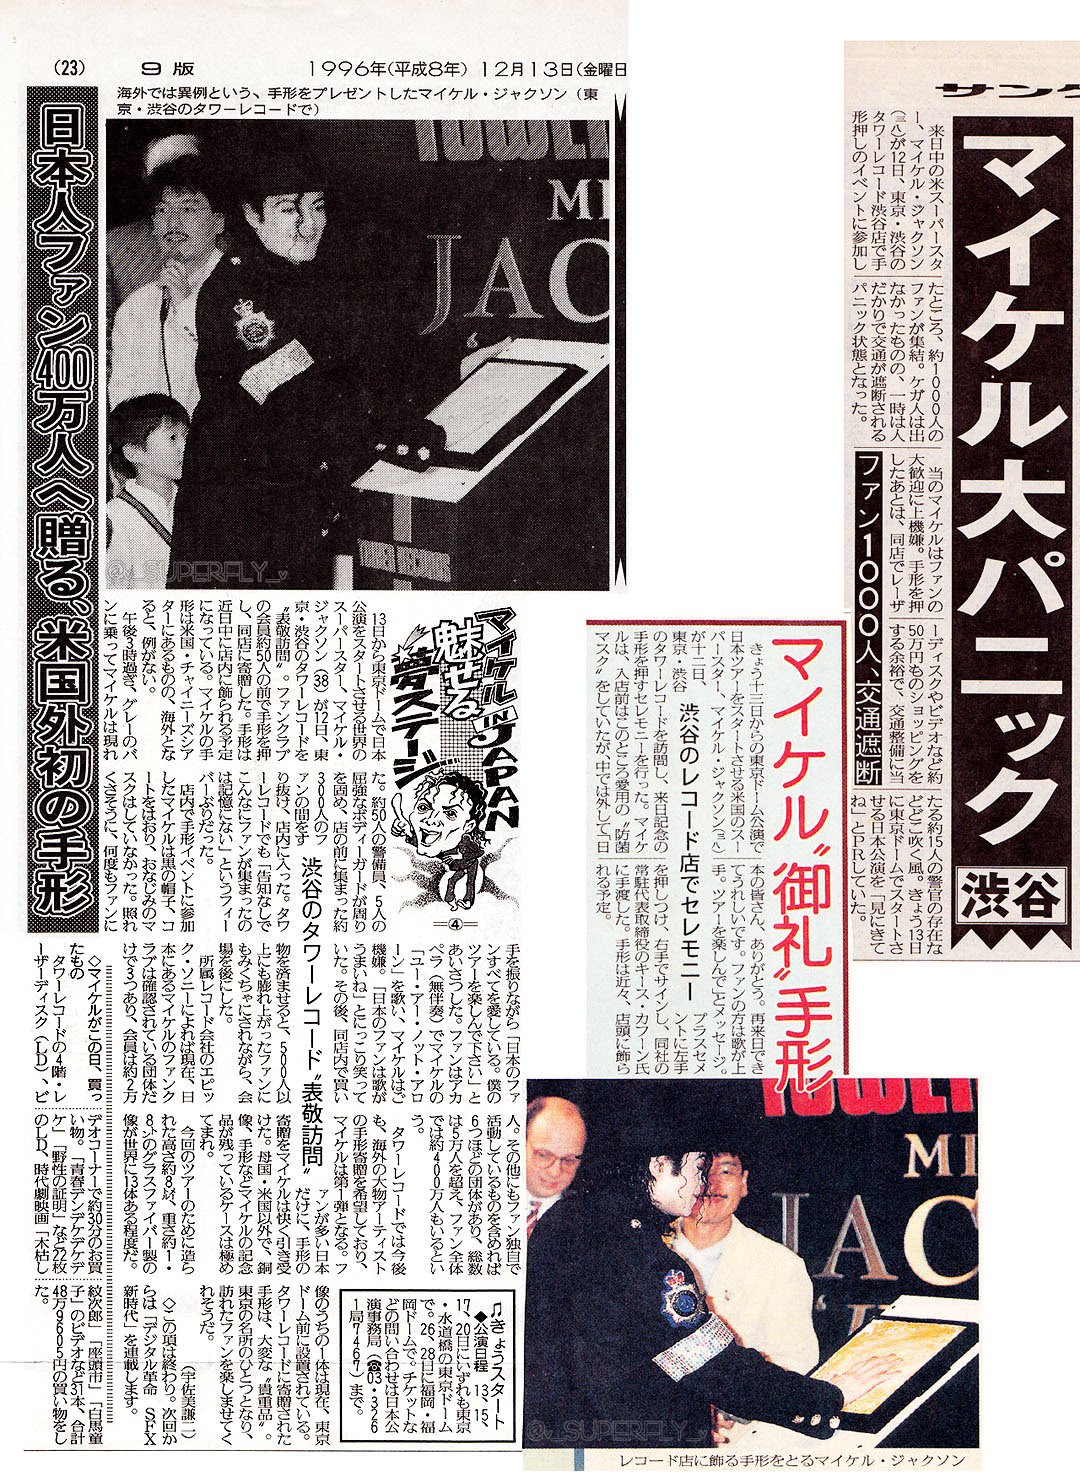 𓅫 Lah 𓅫 19年前の今日 1996年12月12日 タワーレコード渋谷店で手形イベント タワレコの来日記念手形刻印式に出席したマイケル ジャクソンは そのまま店内で座頭市など時代劇ビデオ等々お買い物 渋谷の街は 興奮と熱狂で騒然パニック T